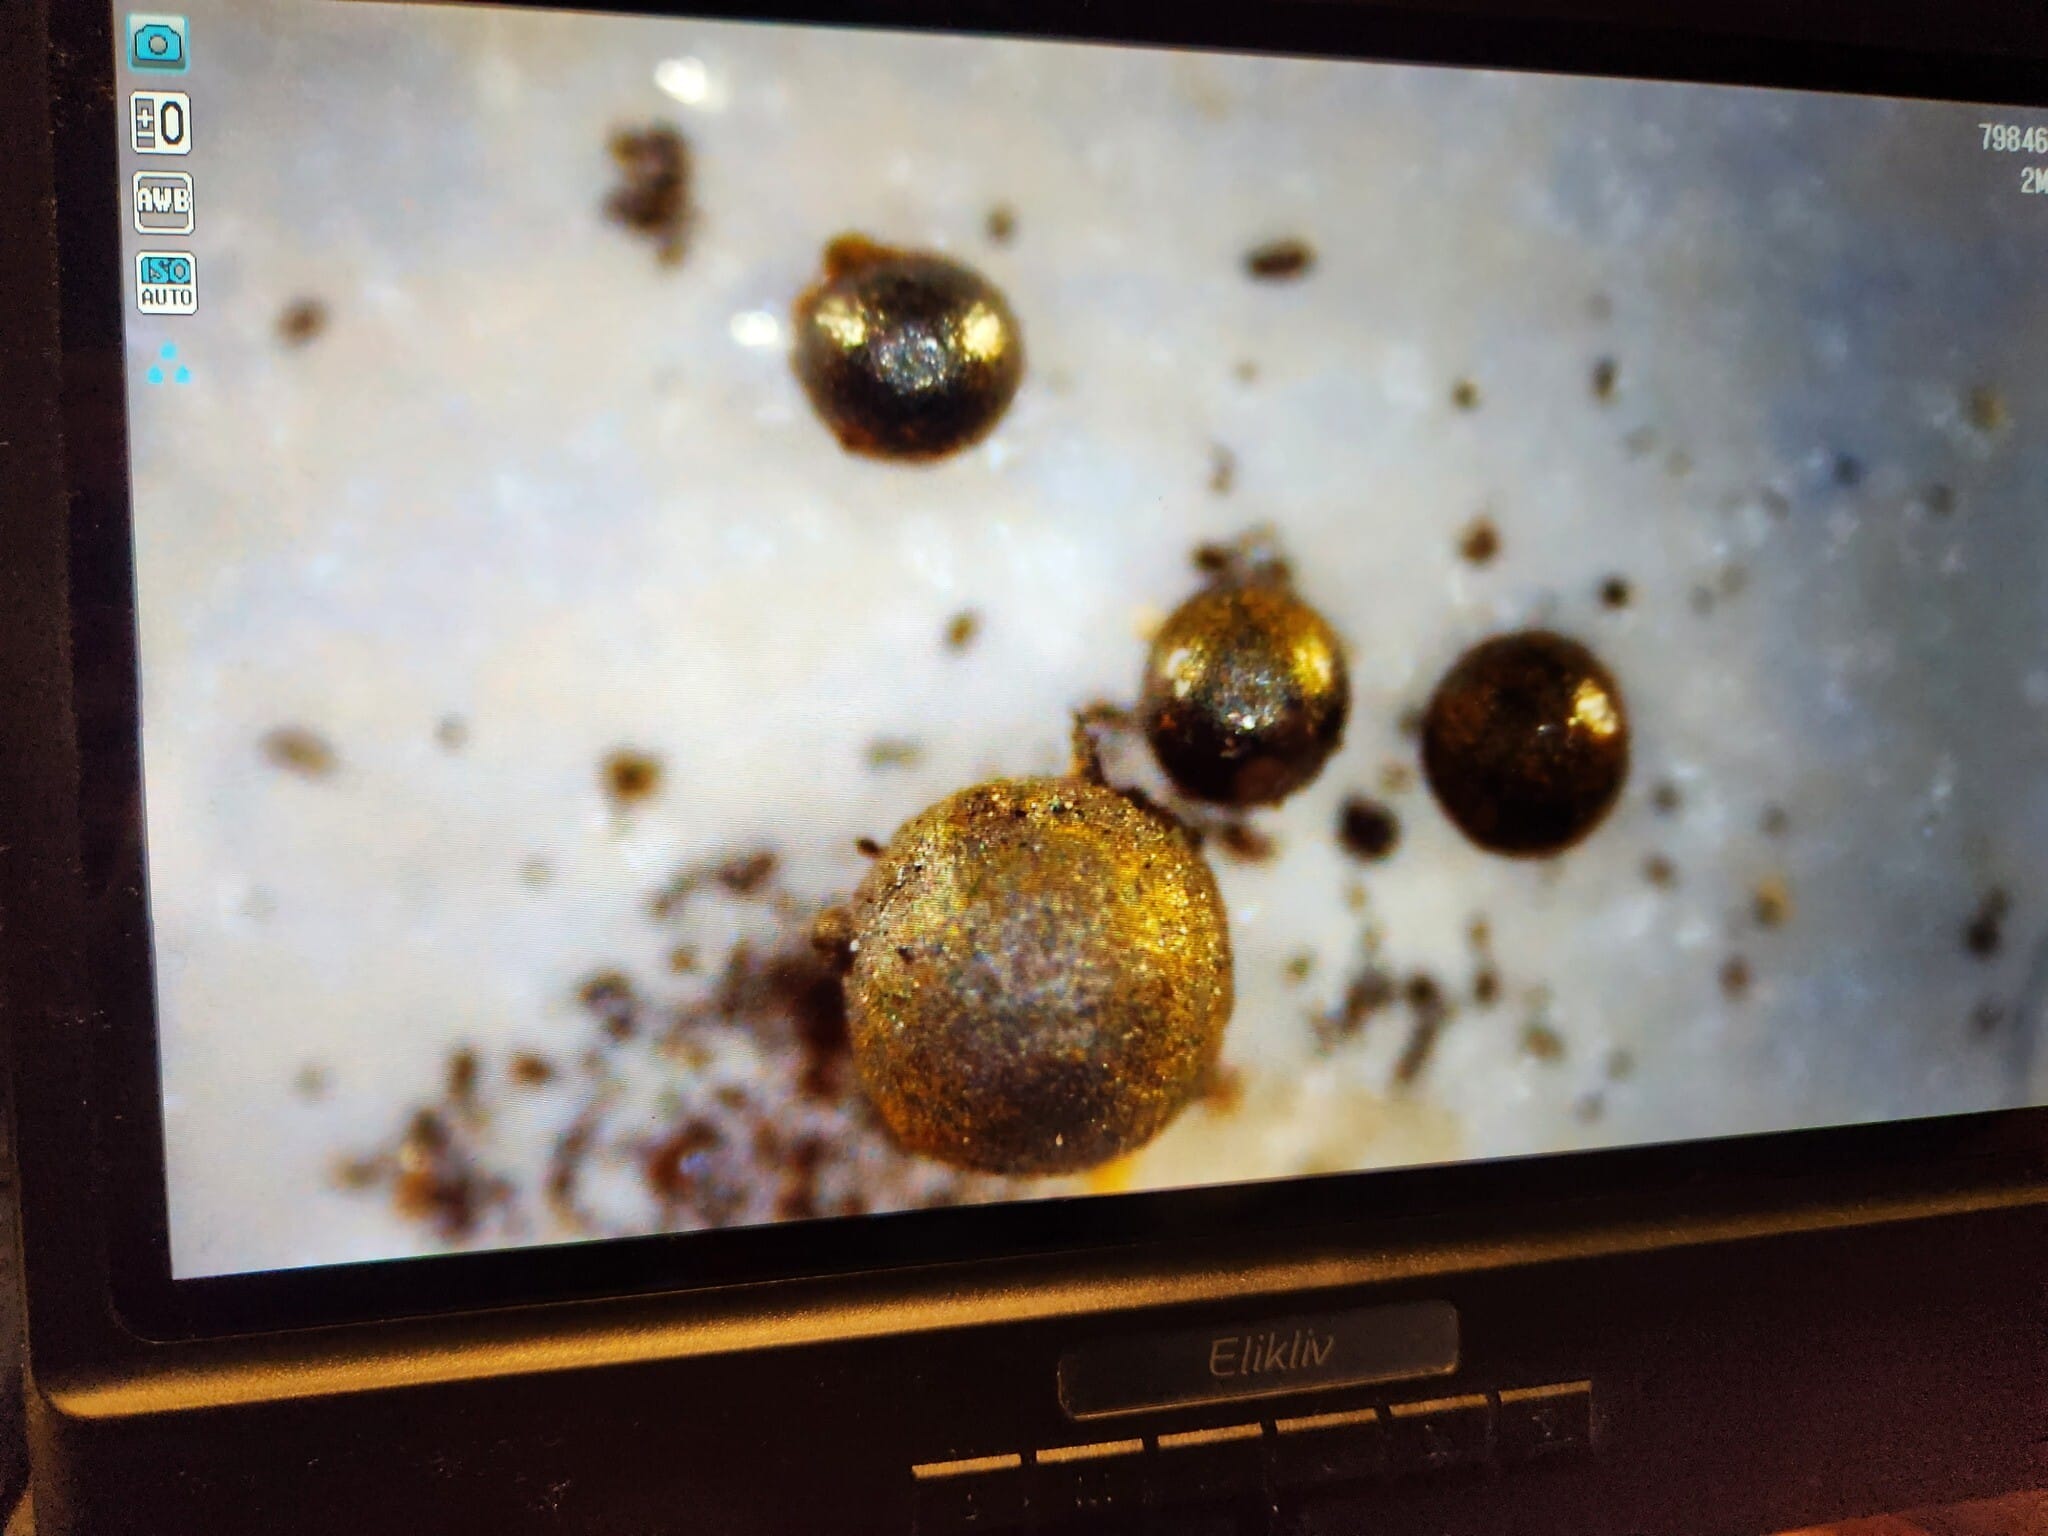 מבט מיקרוסקופי על הכדוריות שנמצאו בקרקעית האוקיינוס (צילום: באדיבות המצולם)